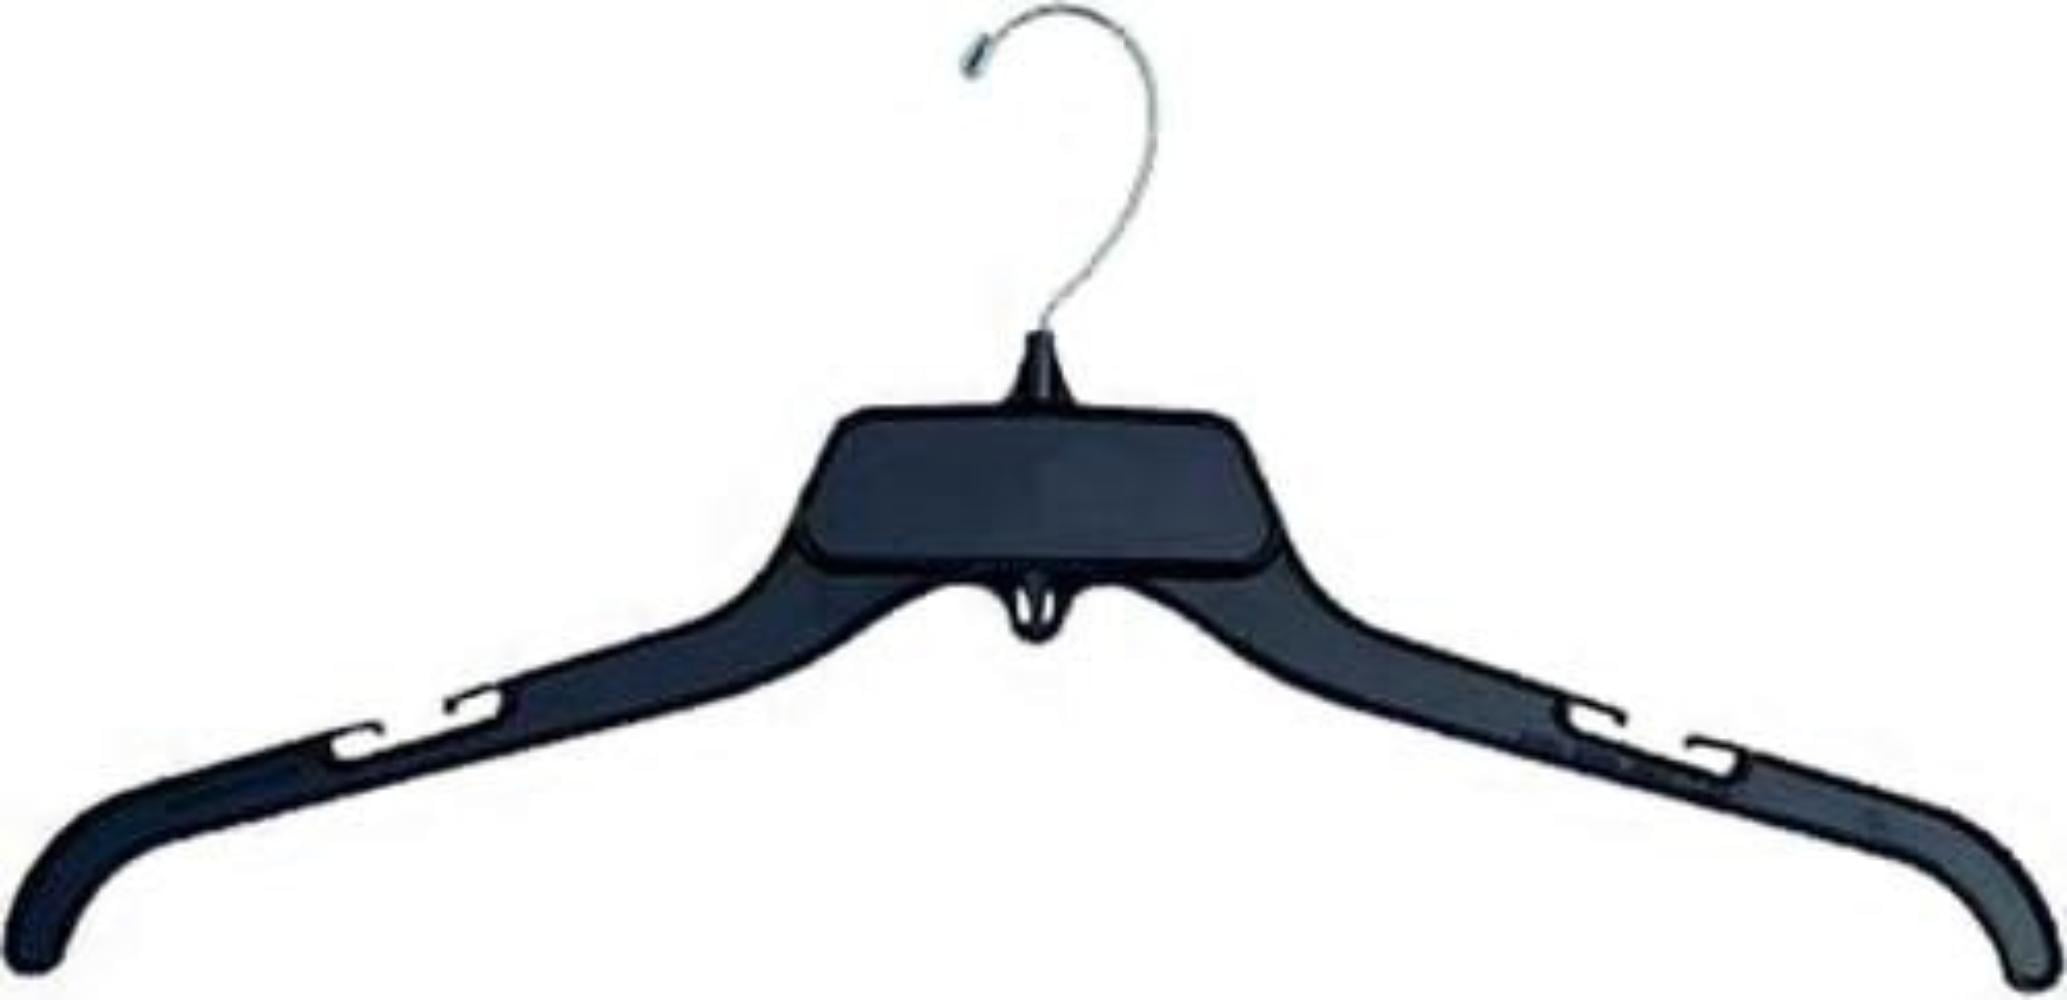 Details about   PK16 Black Plastic Coat Hanger 37cm Closet Clothes Wardrobe Saving Adult Hangers 